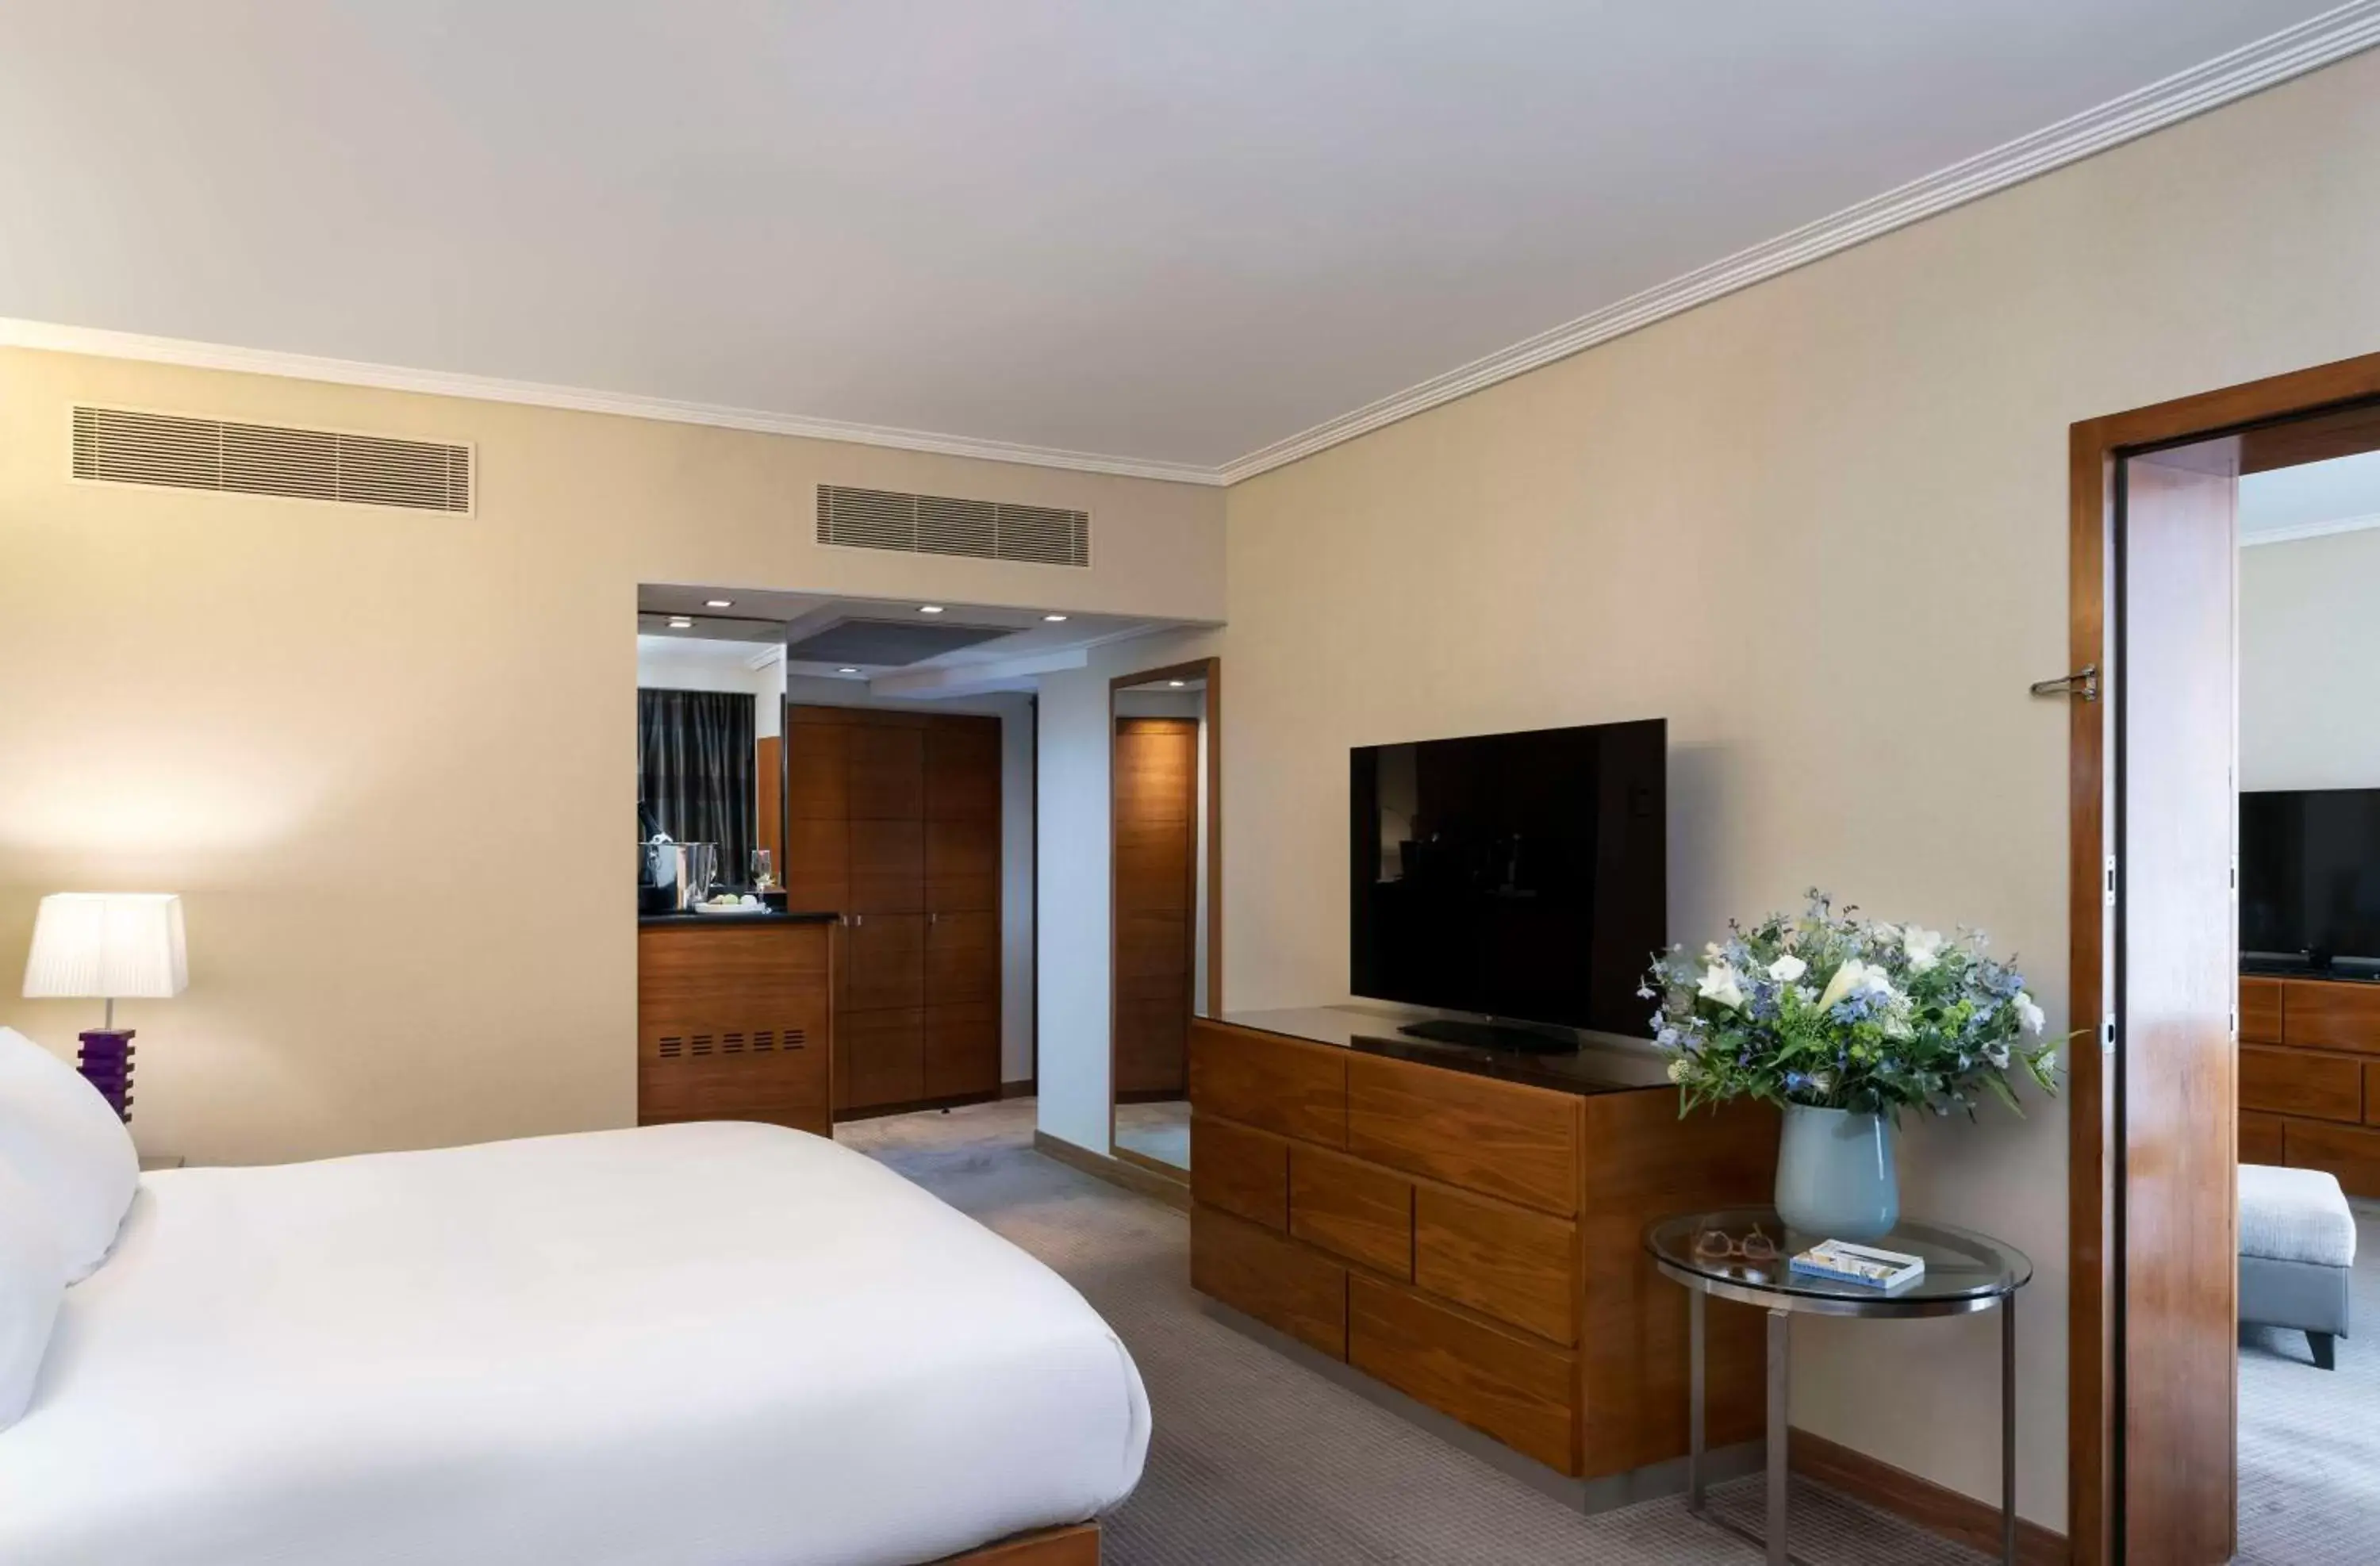 Bedroom, TV/Entertainment Center in Hilton Tel Aviv Hotel